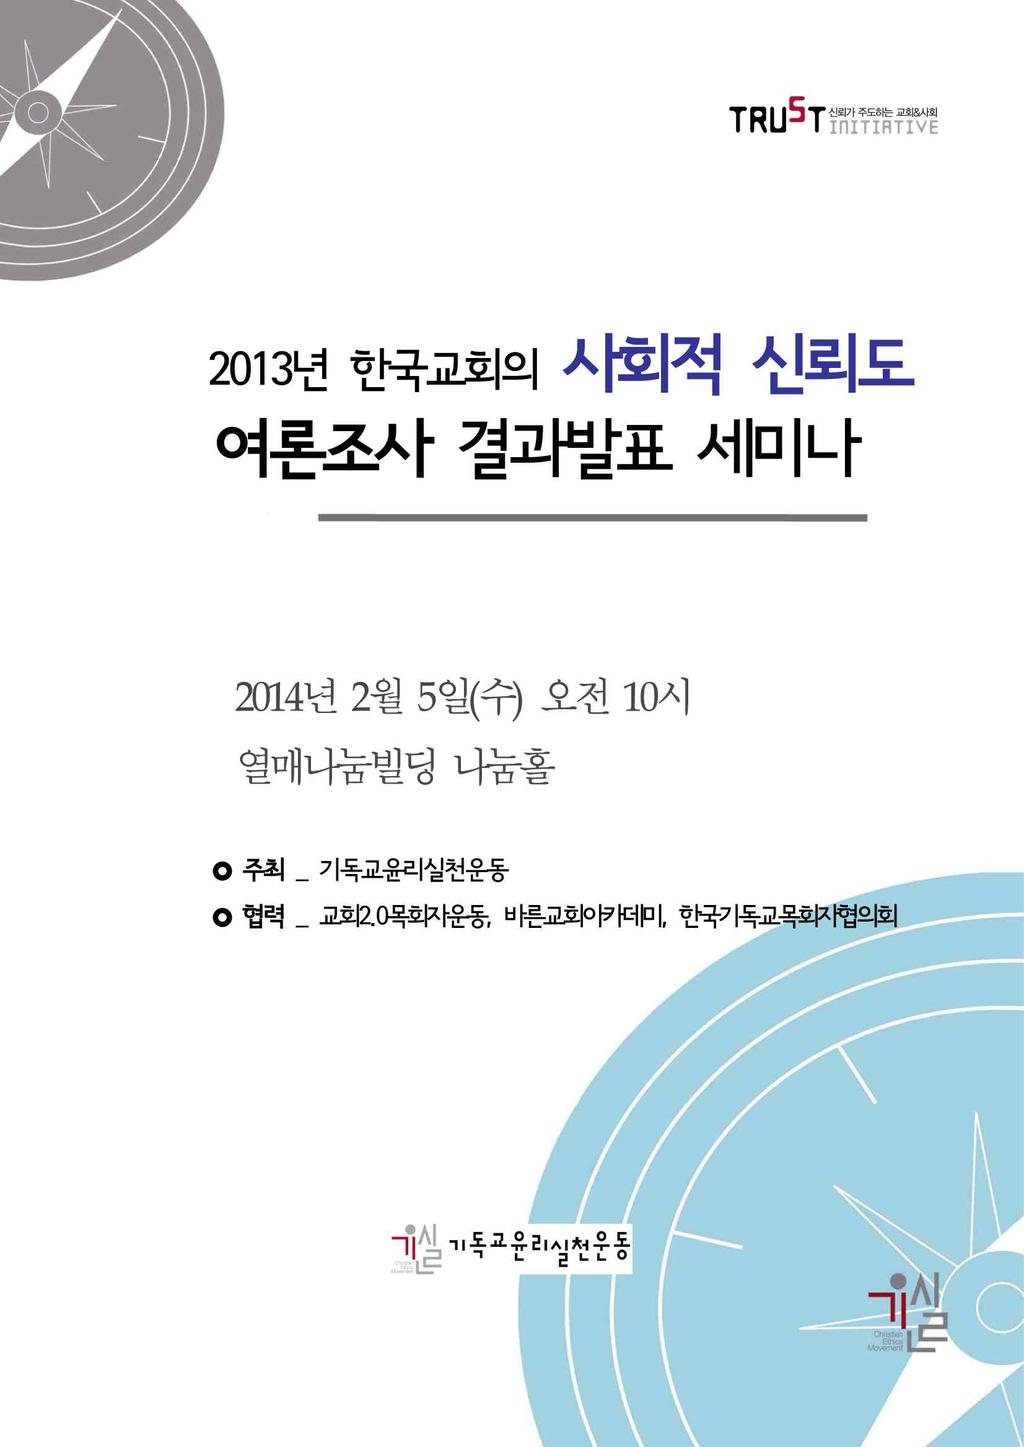 8) 한국교회신뢰회복을위한대토론회 (2007.5) 한국교회신뢰지표 (2007.